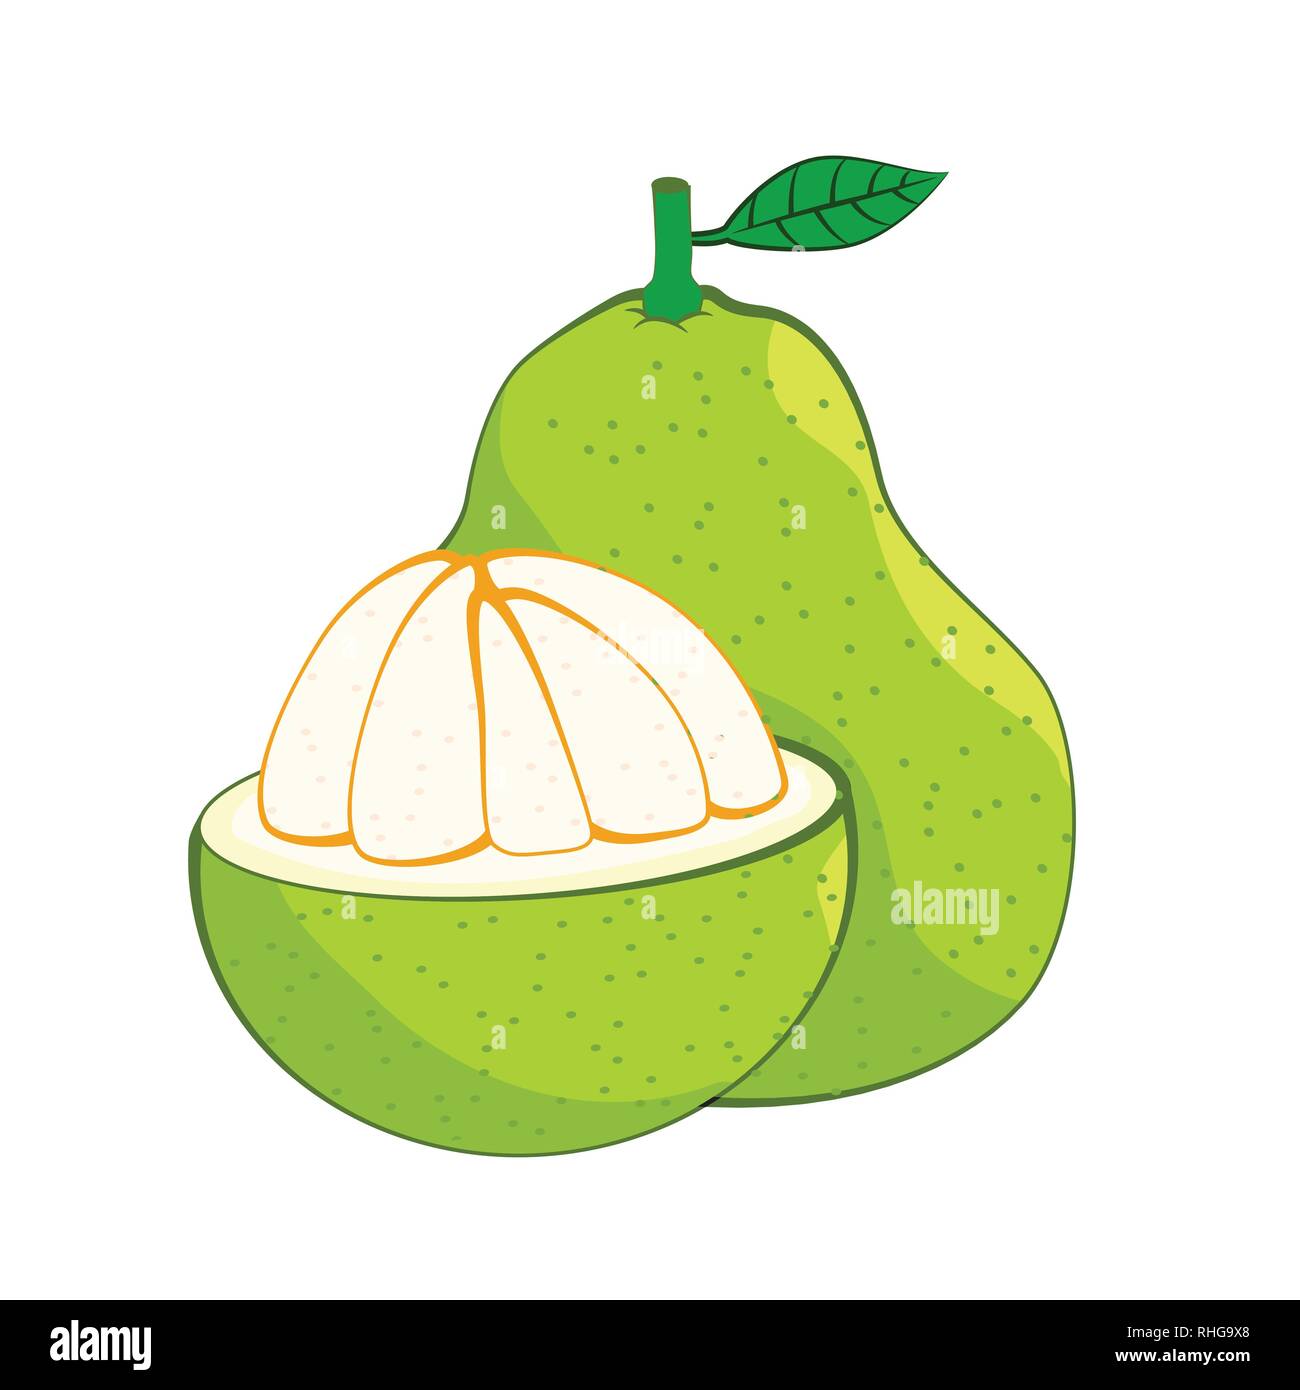 Illustrazione del pomelo freschi, isolato su sfondo bianco, fresco cibo sano, organica frutta naturale. Illustrazione Vettoriale. Illustrazione Vettoriale